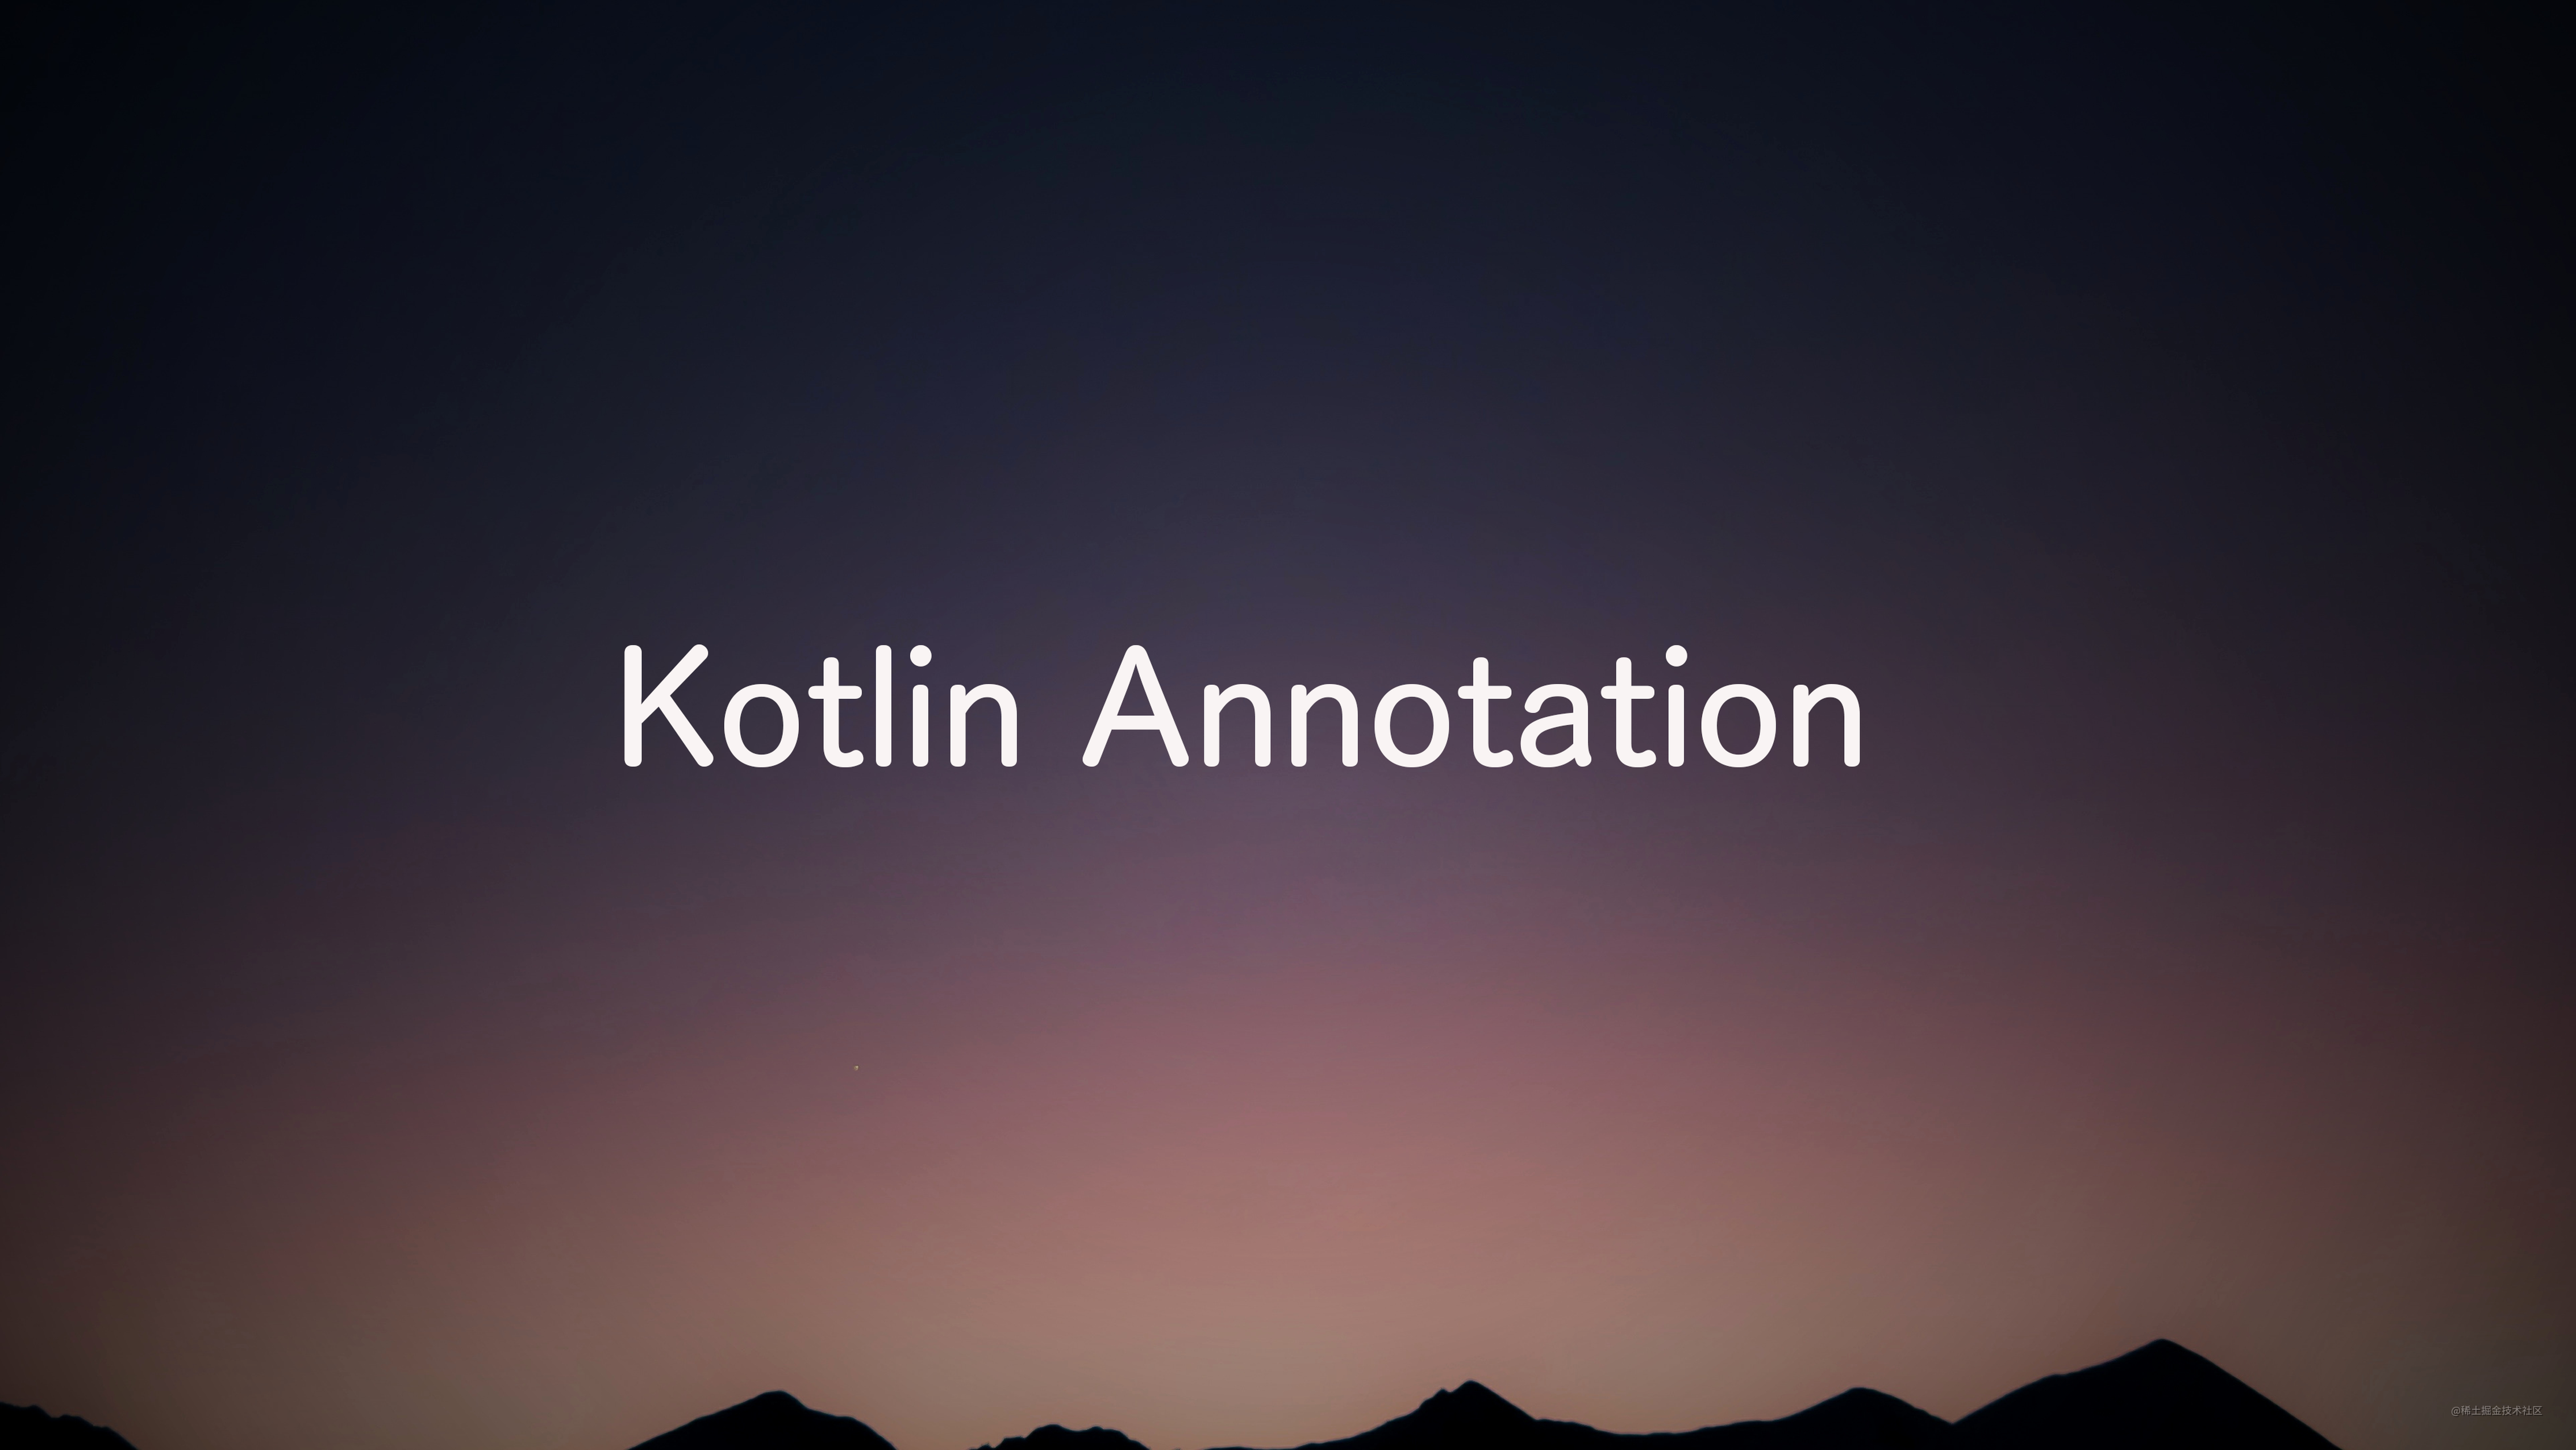 教你如何完全解析Kotlin中的注解